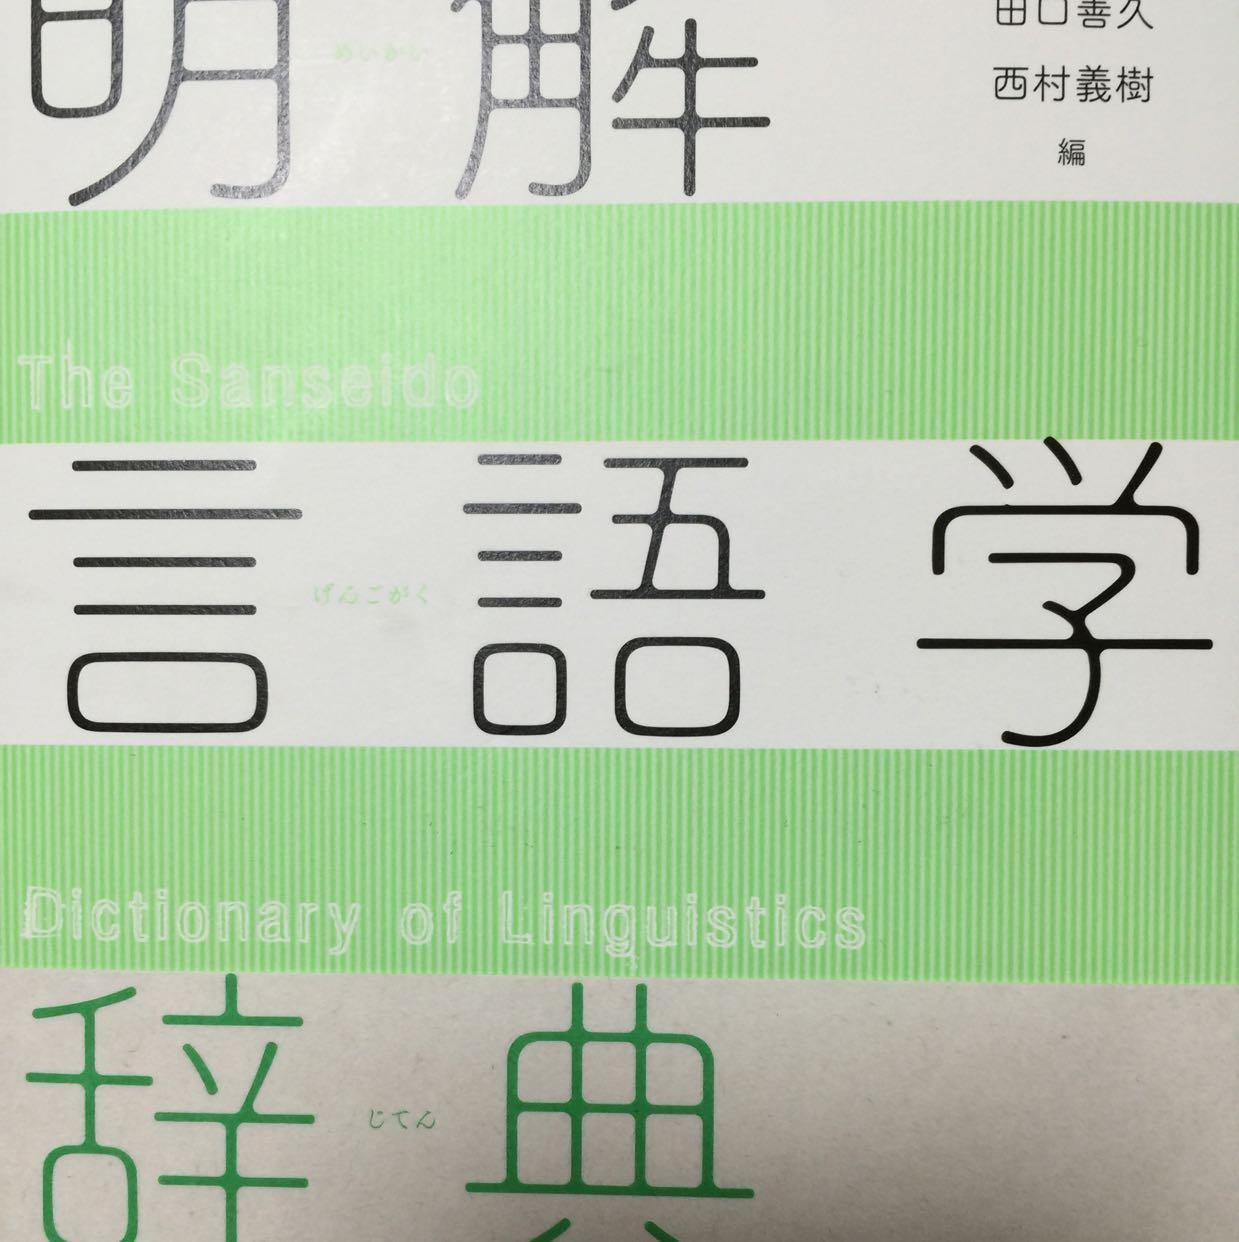 法学部生の綴る言語学な日々日本手話と日本語対応手話(手指日本語)について